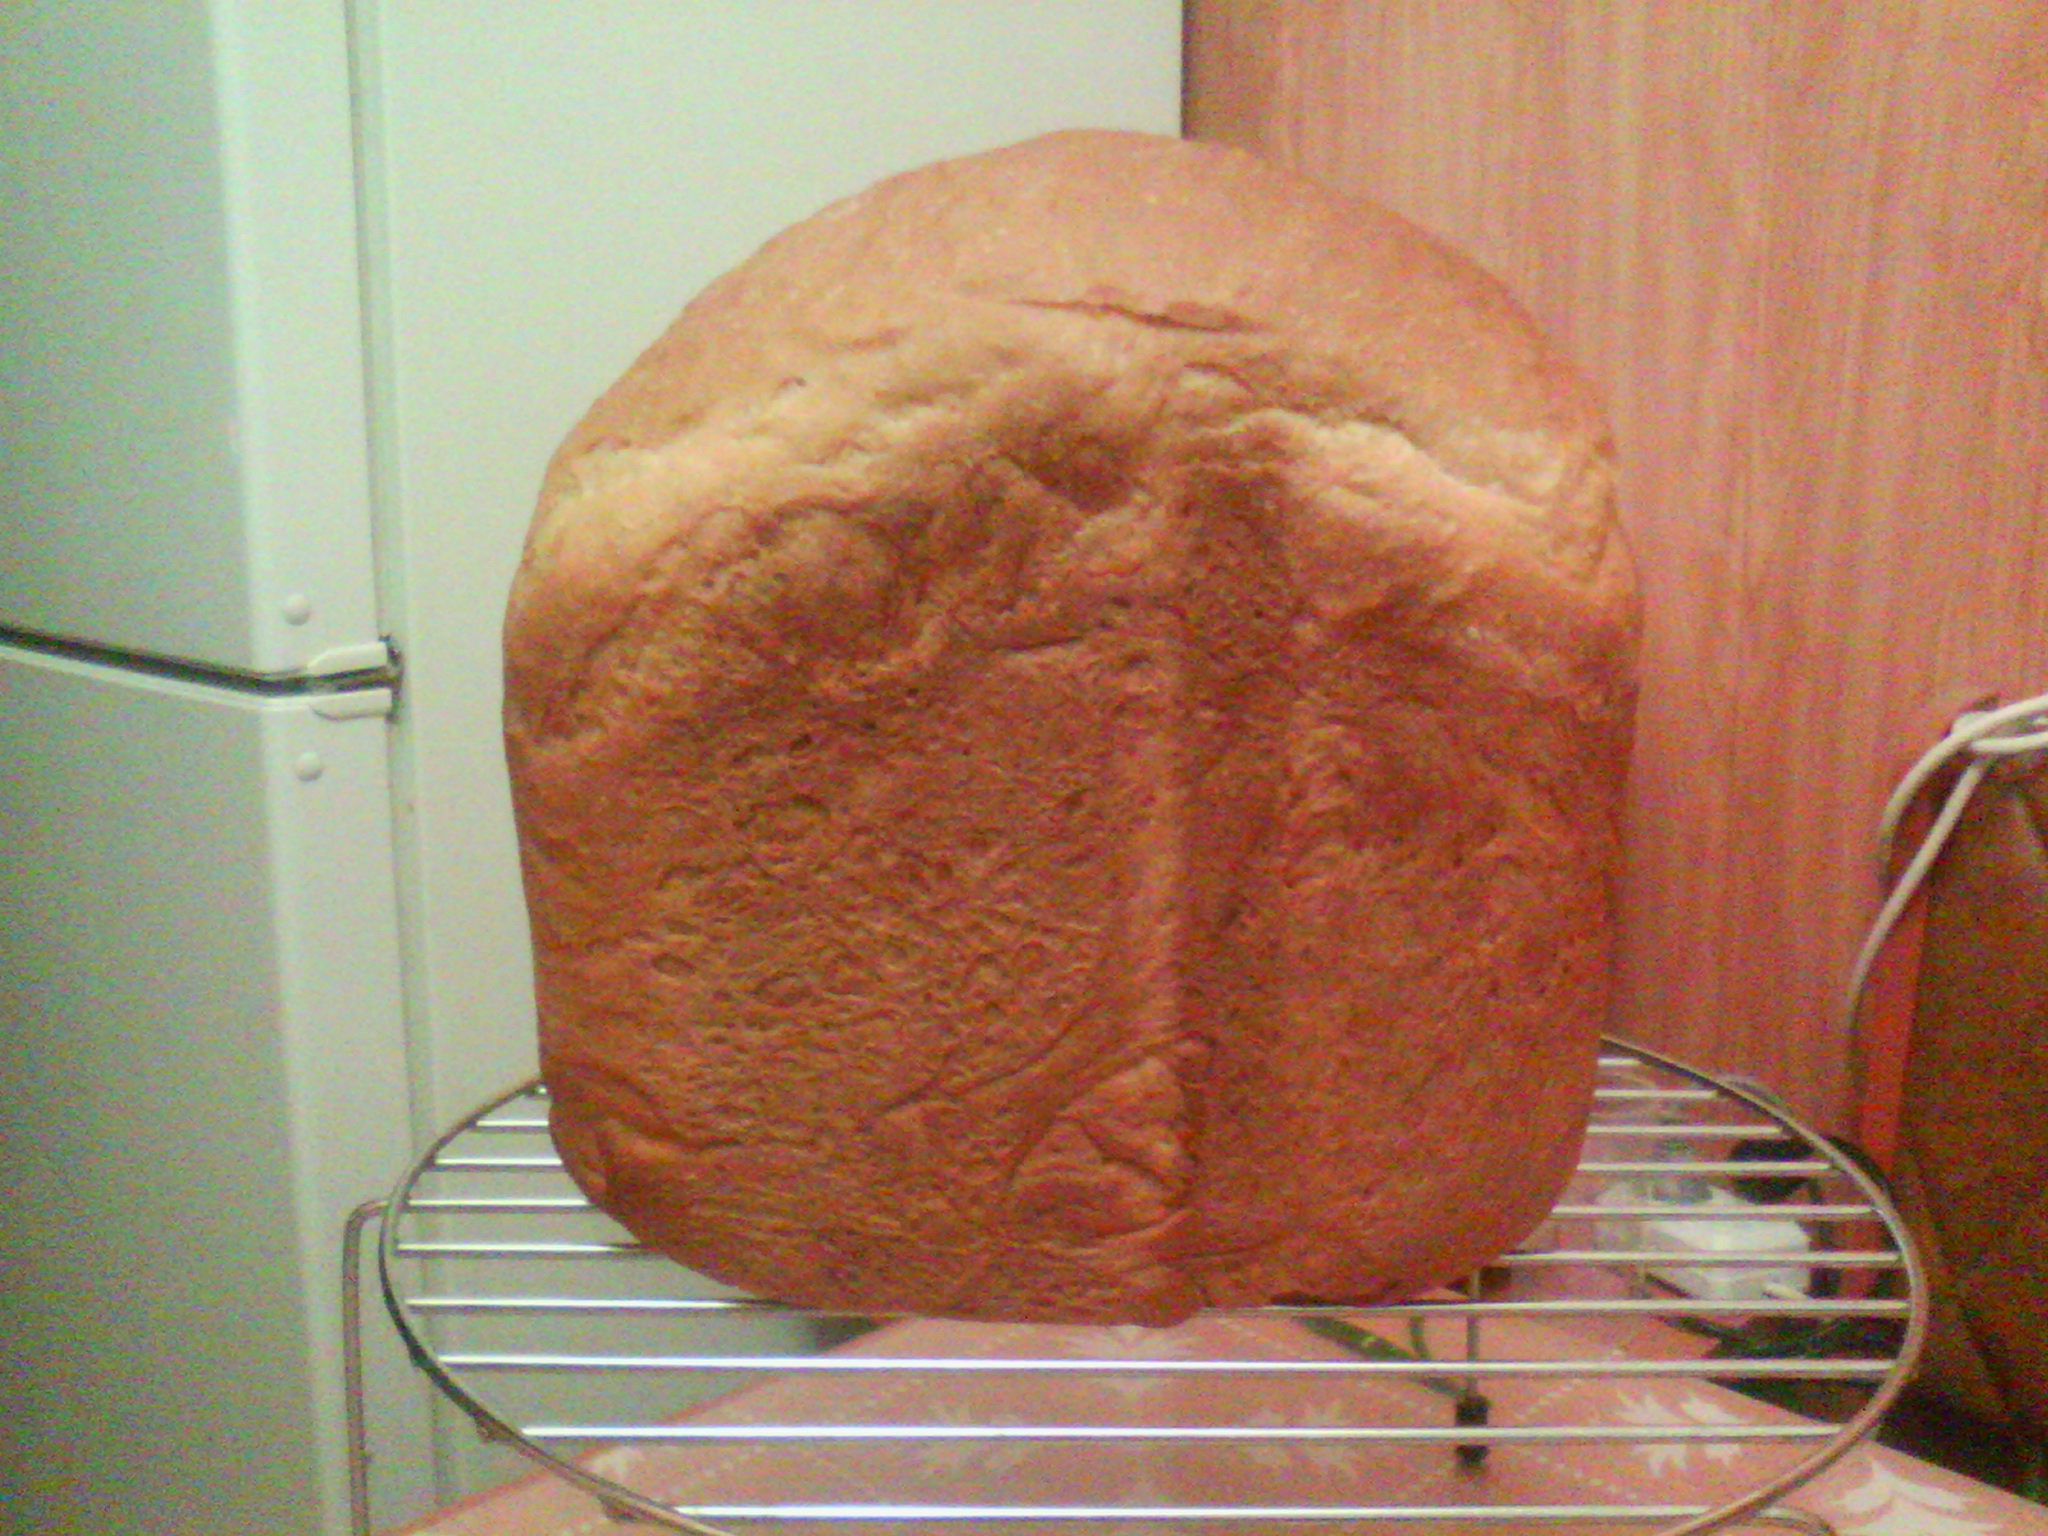 Chleb maślany z 1 gatunku mąki w maszynie do chleba